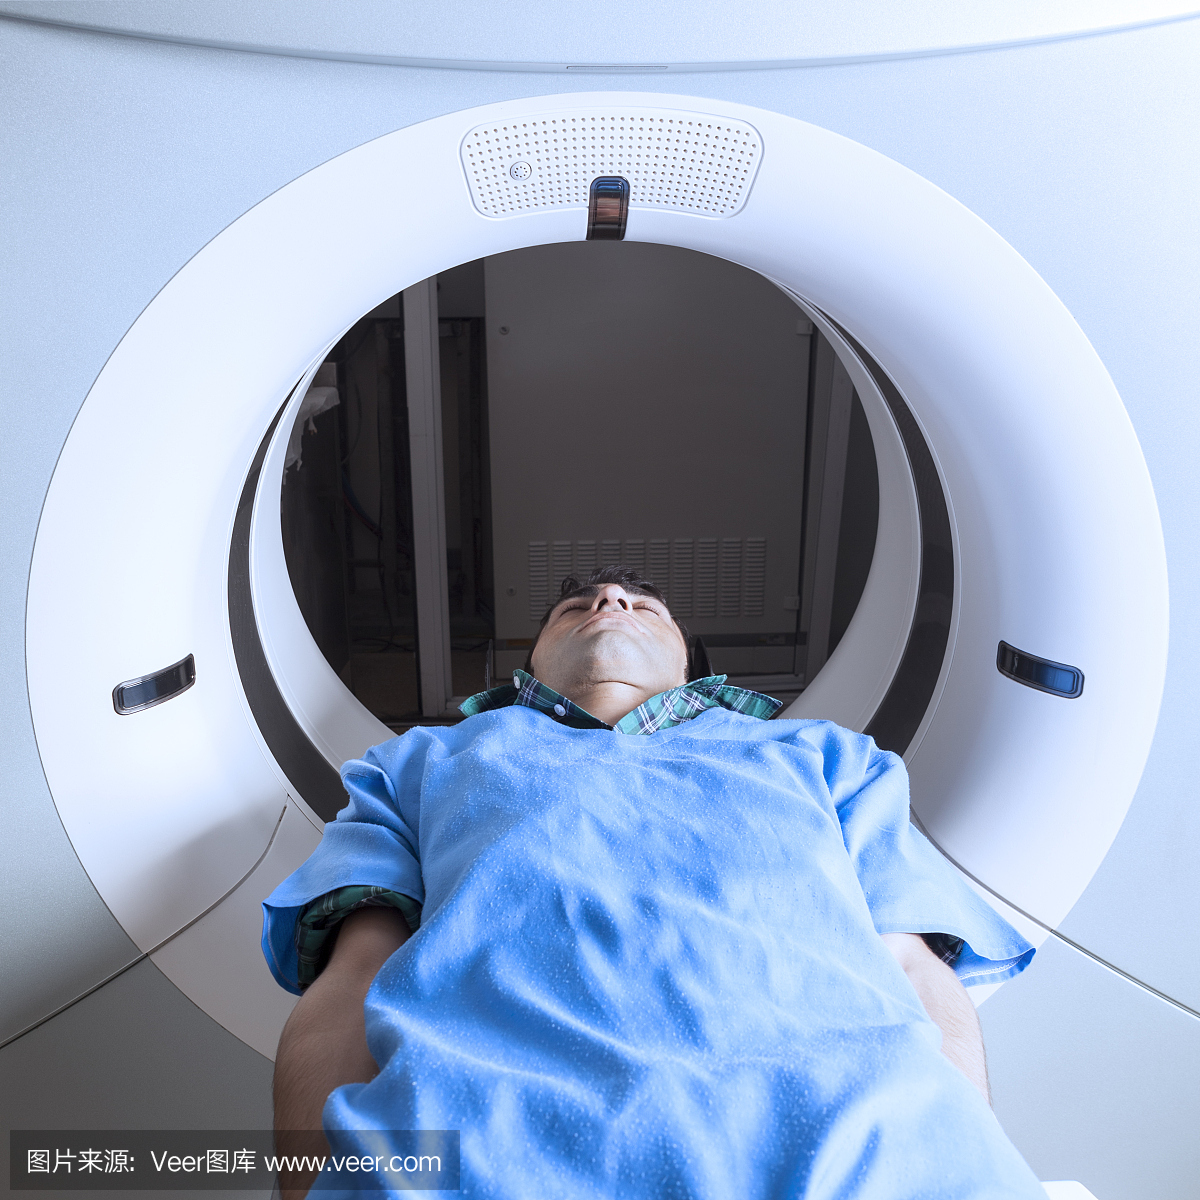 通过现代CT扫描仪进行体格检查的人员